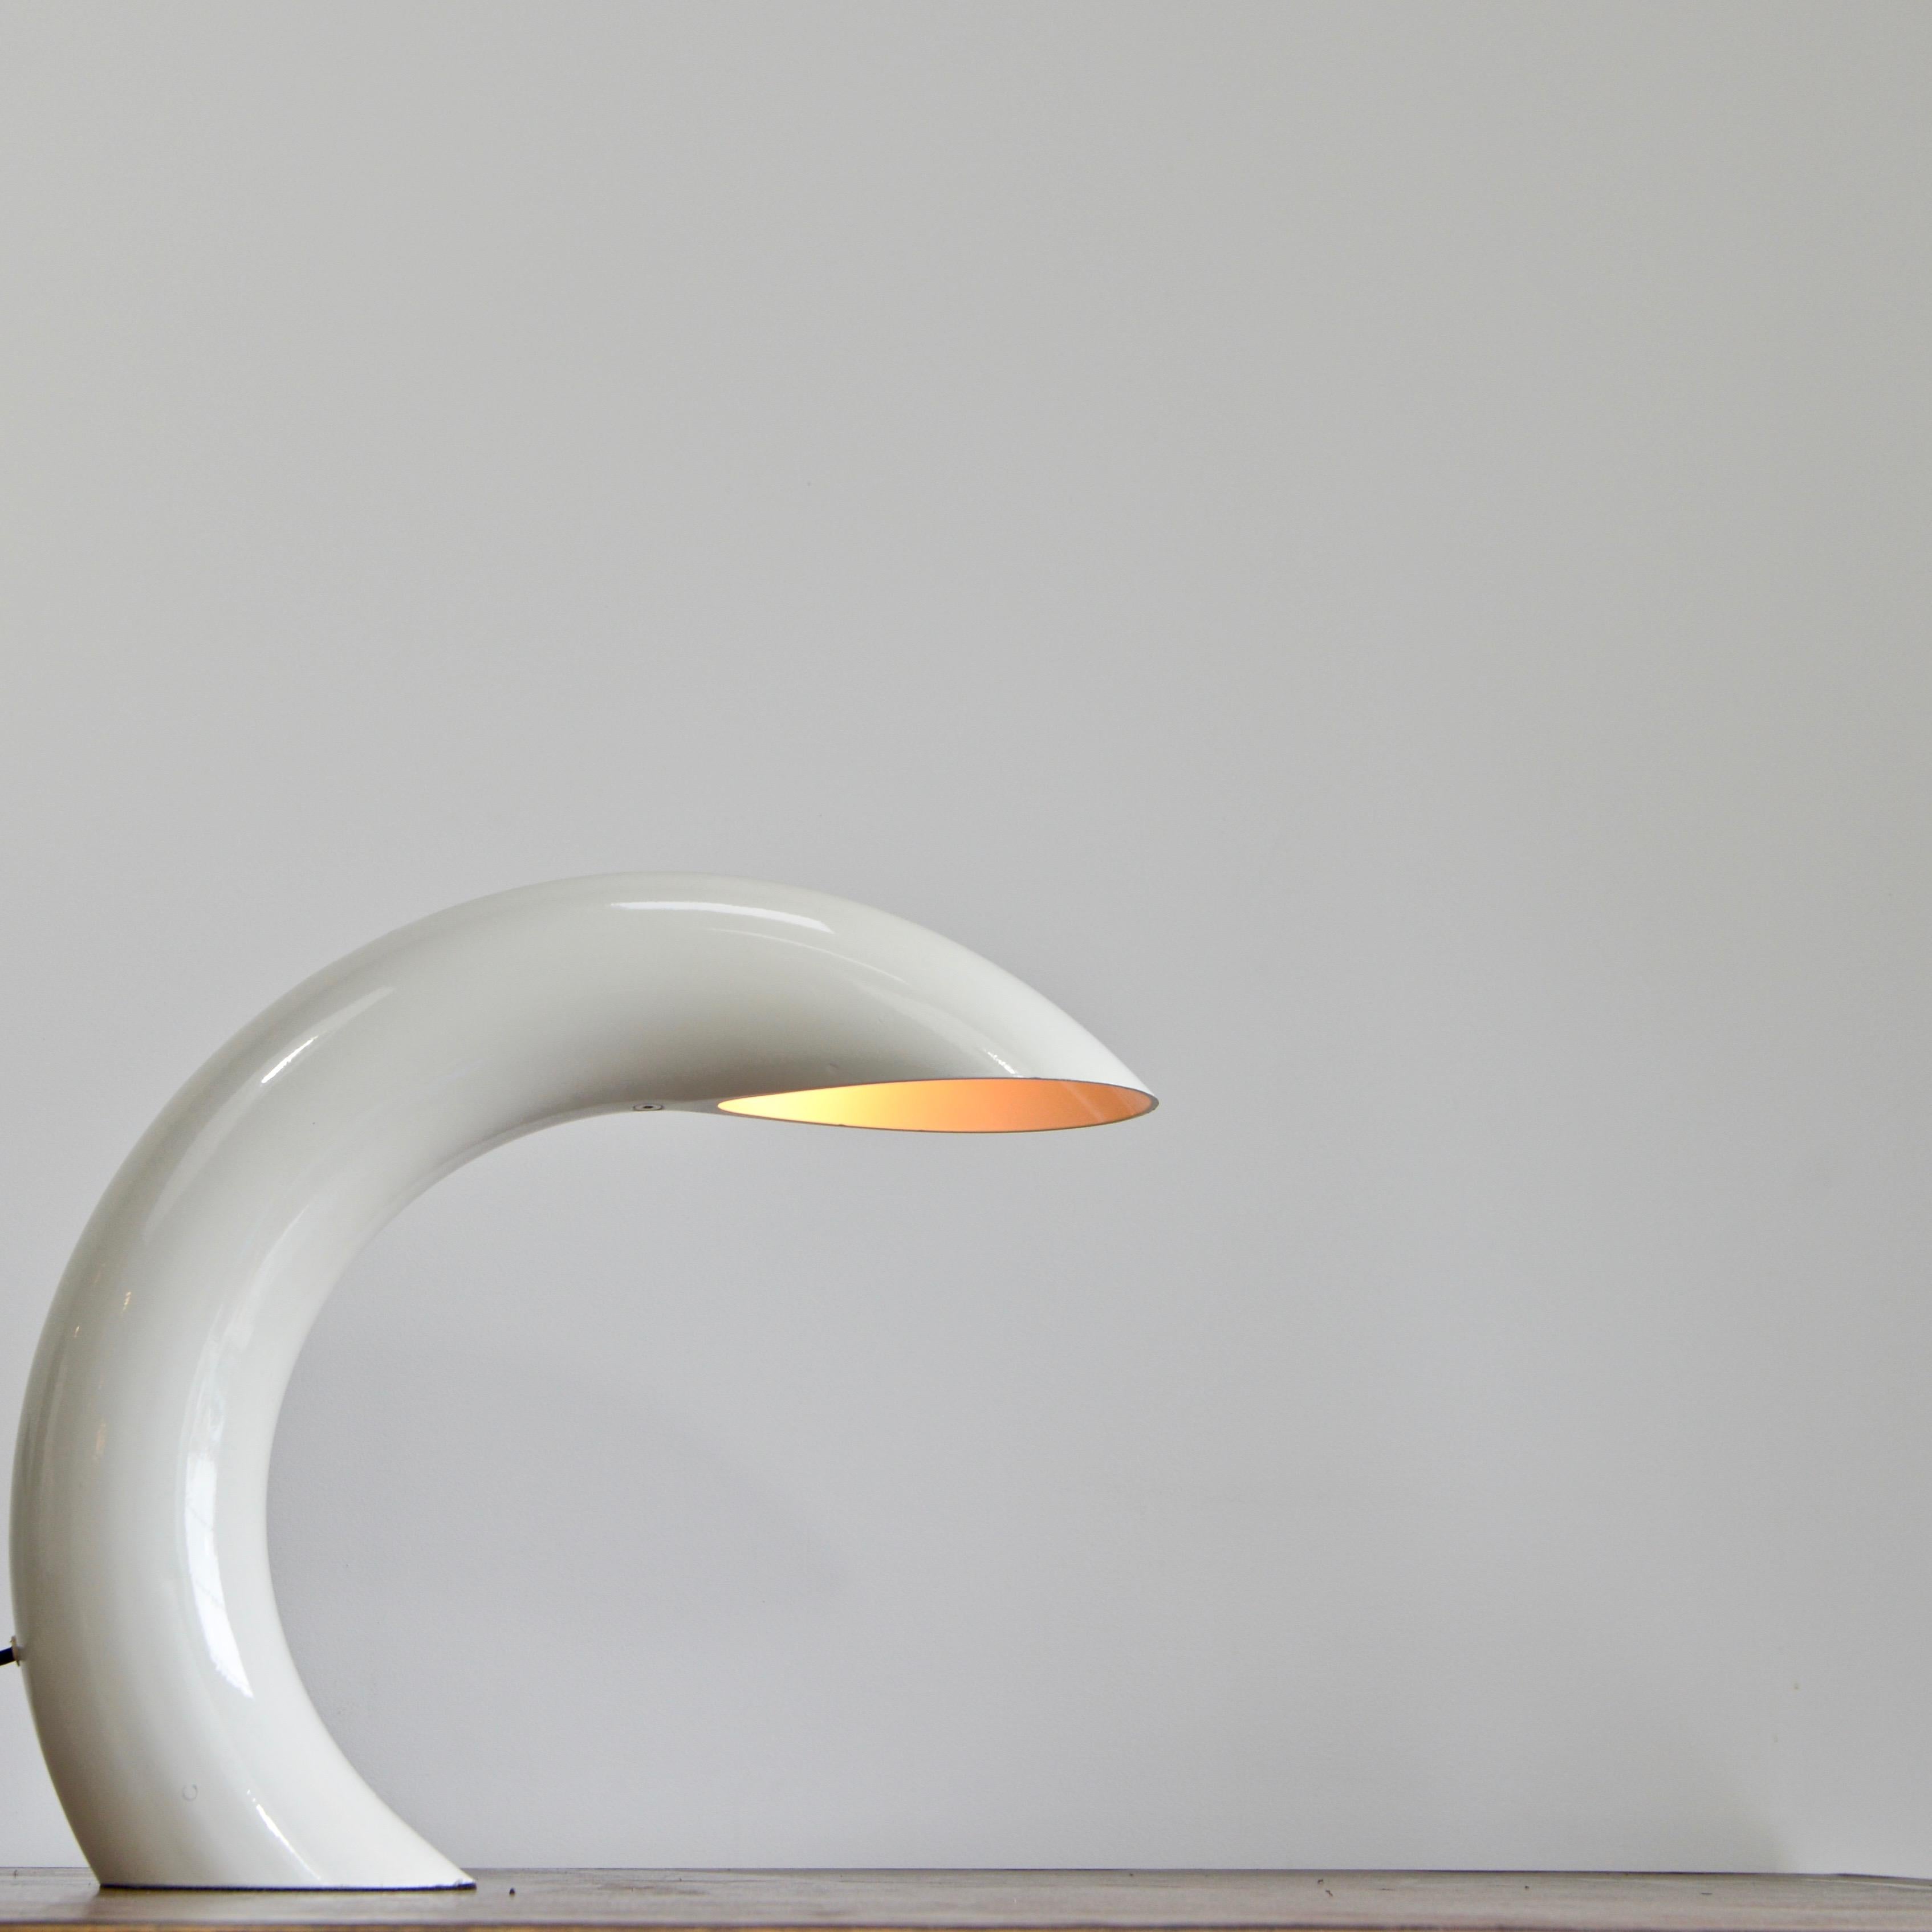 Skulpturale weiße Bogen-Tischlampe aus den 1960er Jahren von Georges Frydman aus Frankreich. Vollständig neu verkabelt mit einer einzigen E26-Fassung, bereit für den Einsatz in den USA. Ausführung: Aluminium und Stahl. Abmessungen:
Maße: Höhe